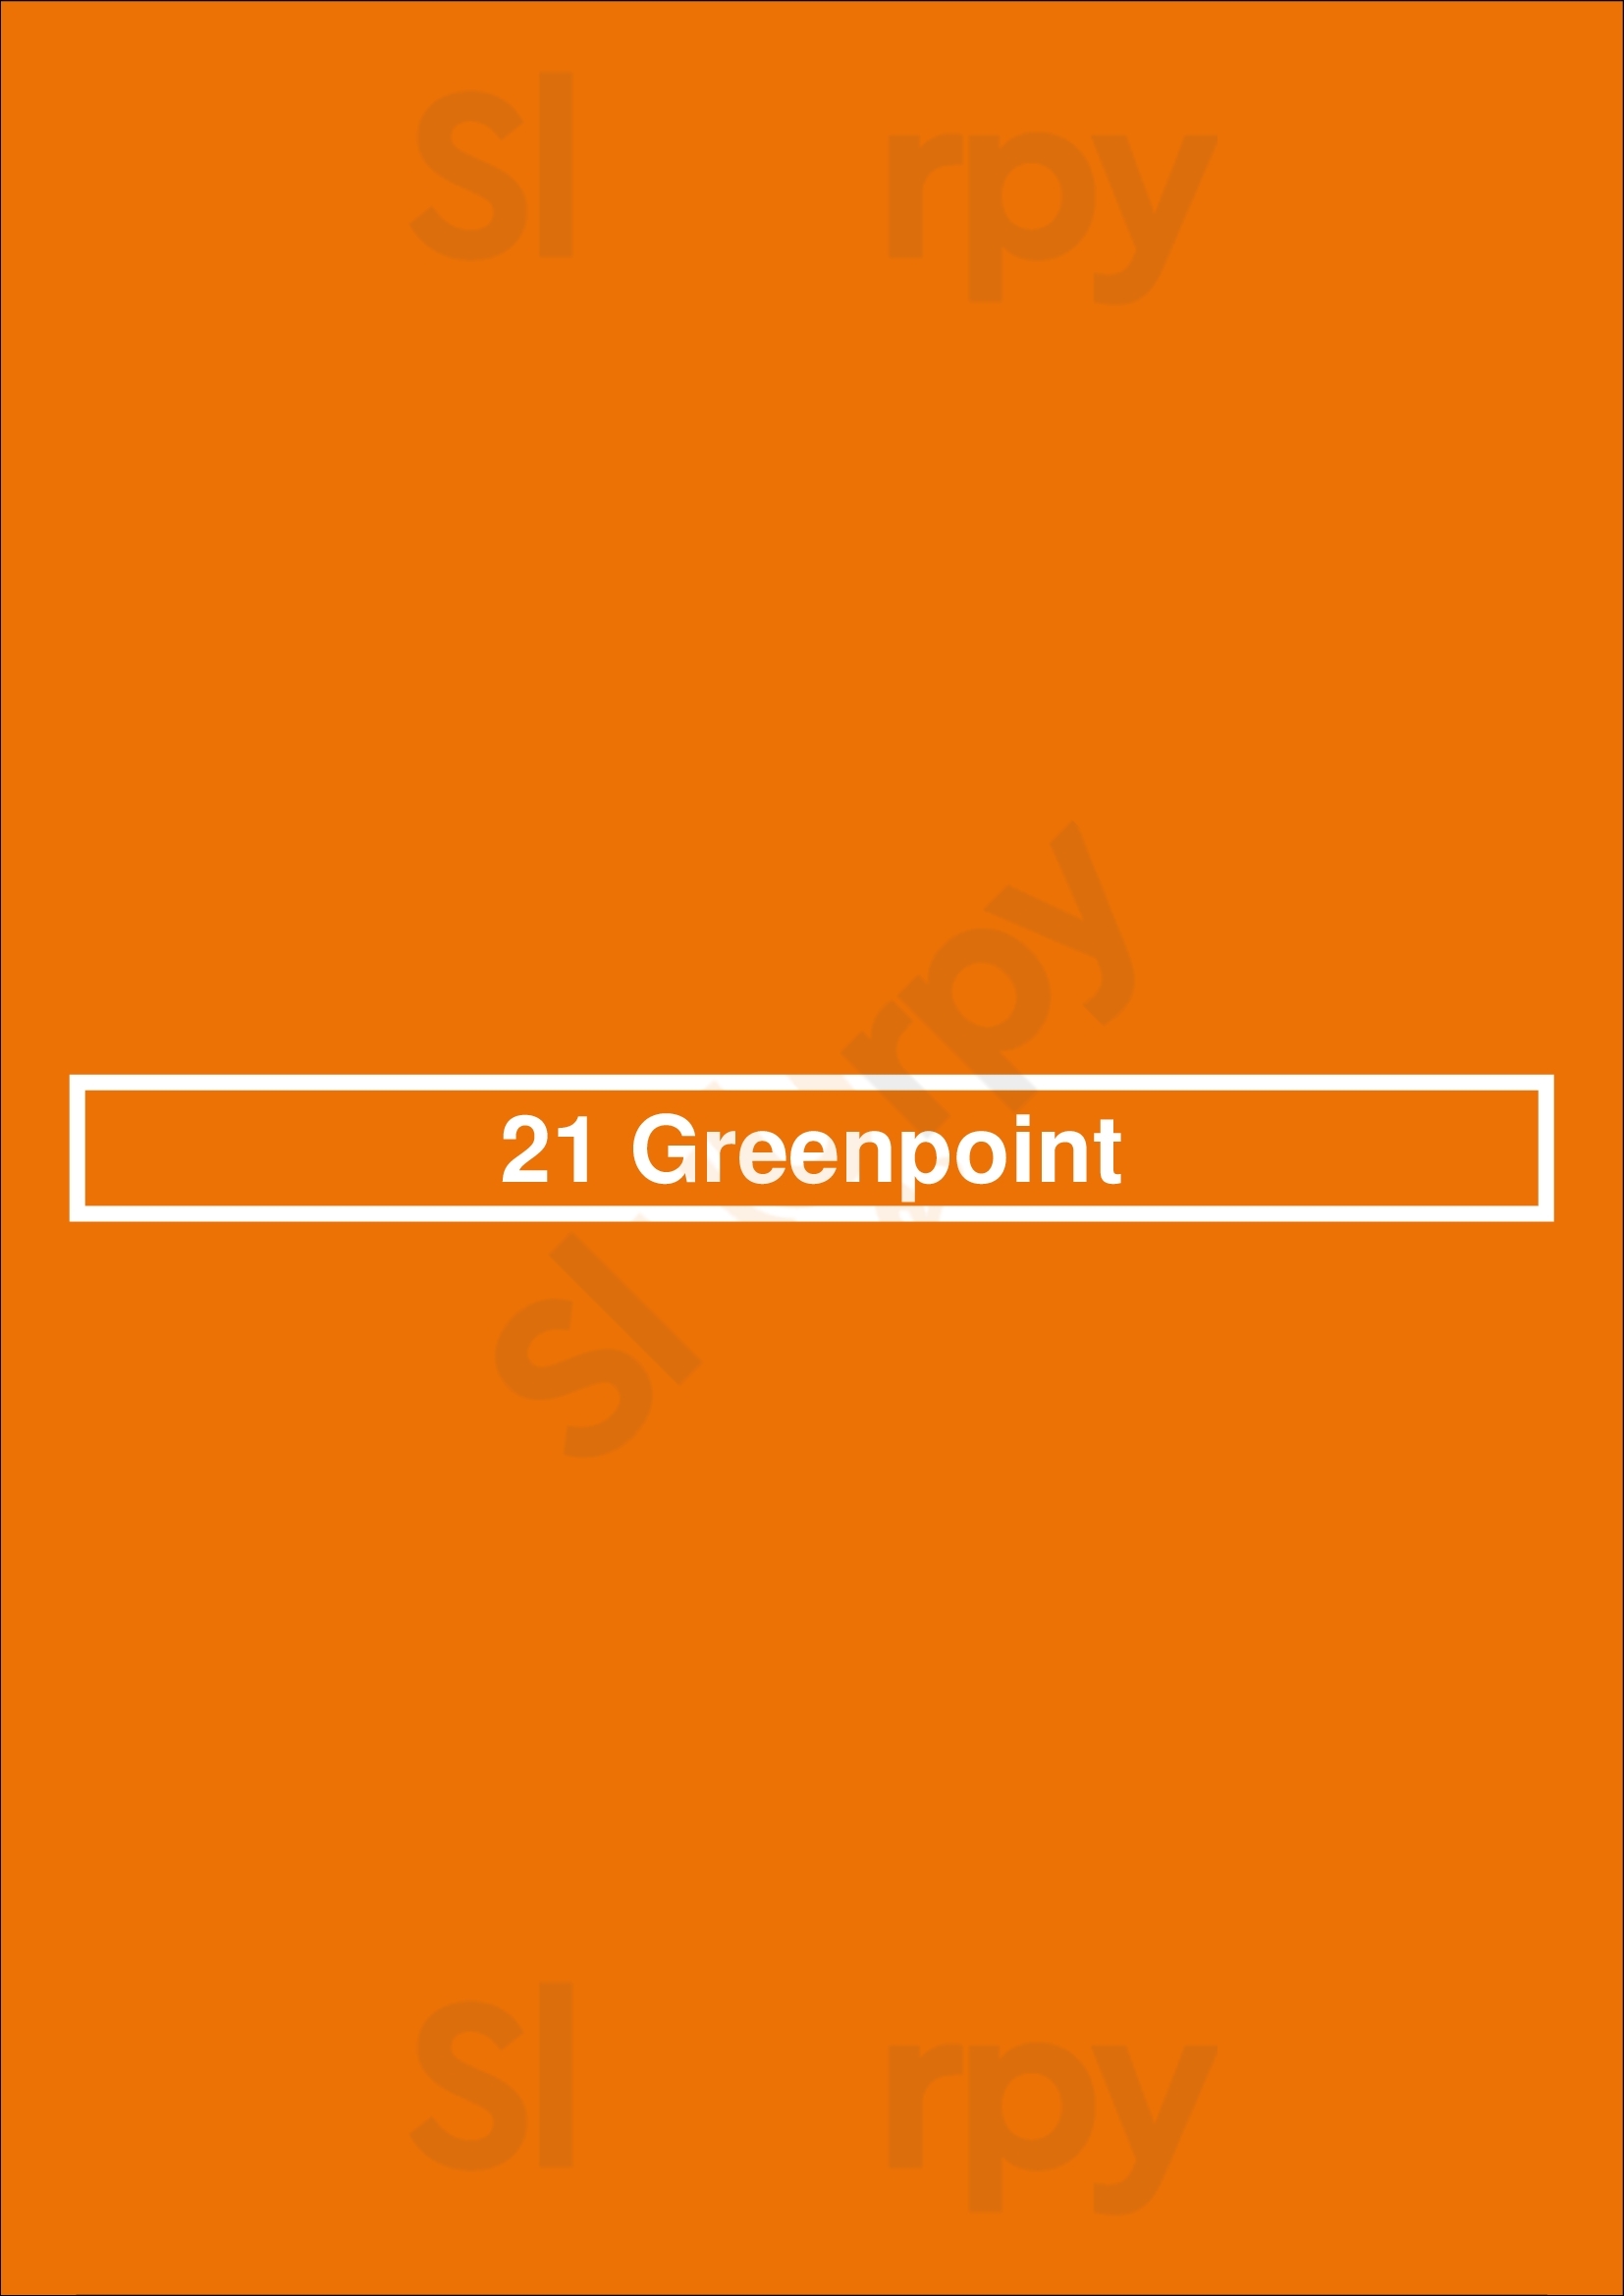 21 Greenpoint Brooklyn Menu - 1